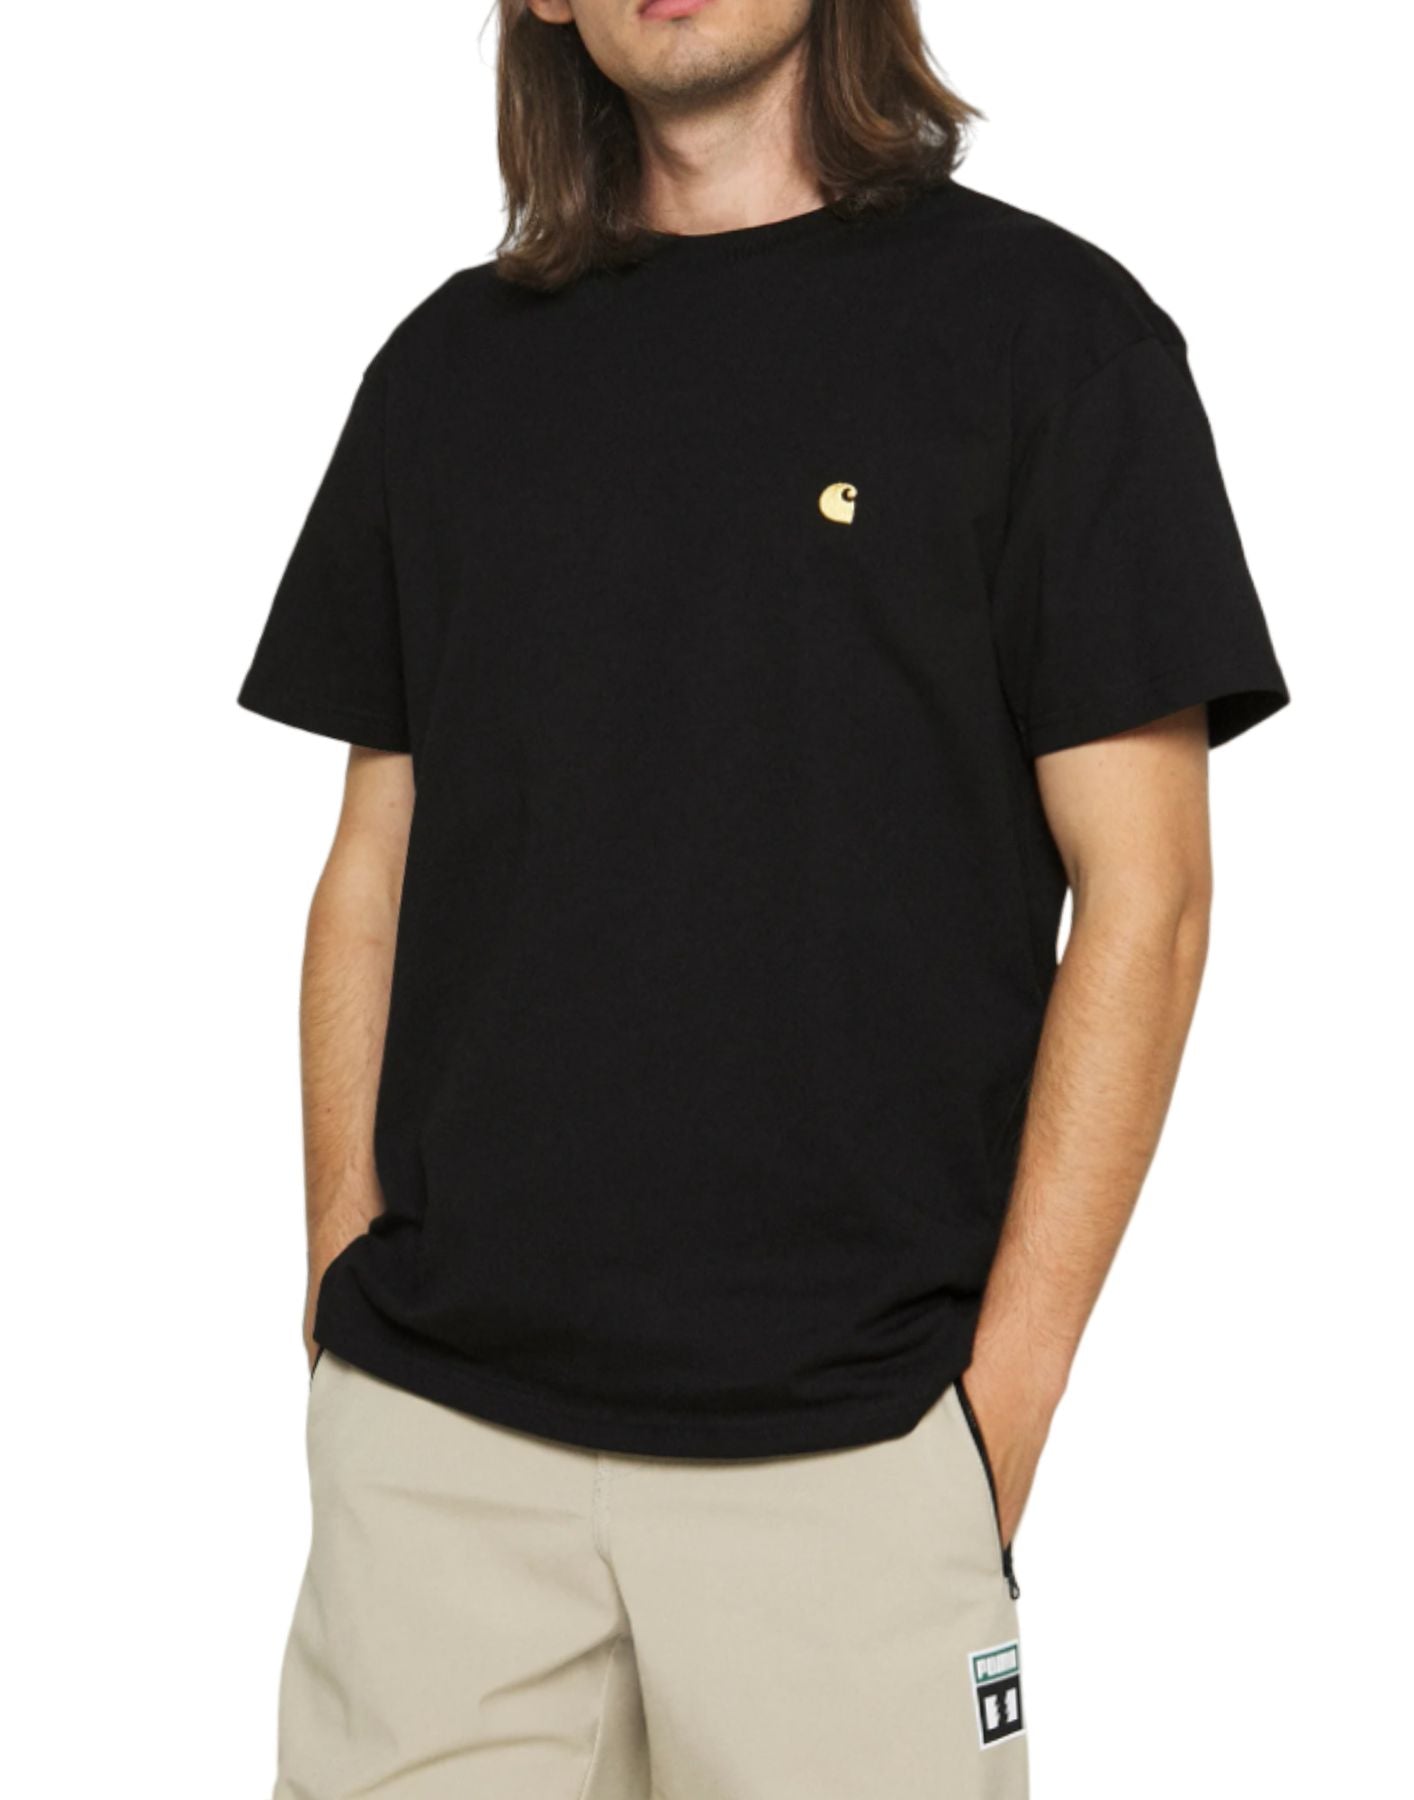 T-shirt pour l'homme i026391 noir CARHARTT WIP – Onyou